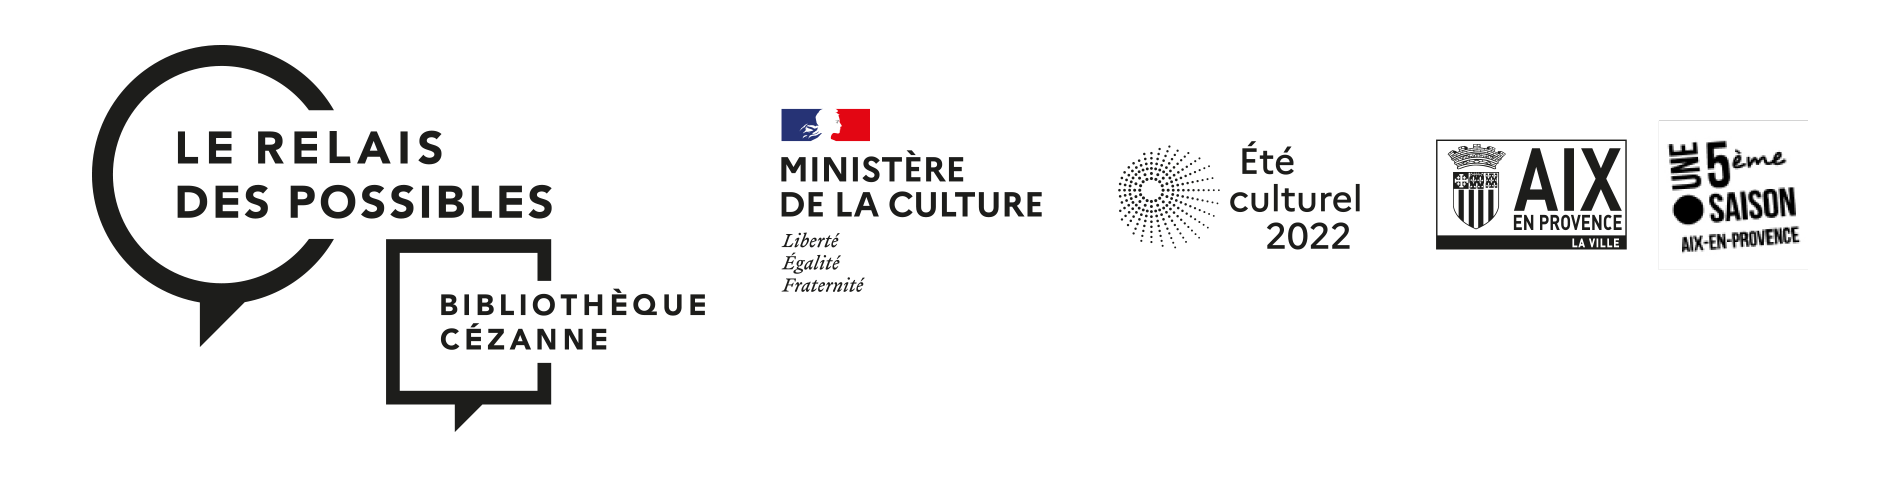 Le_Relais_des_Possibles-Biblio-Cezanne-ministere-culture-5eme_saison_Aix